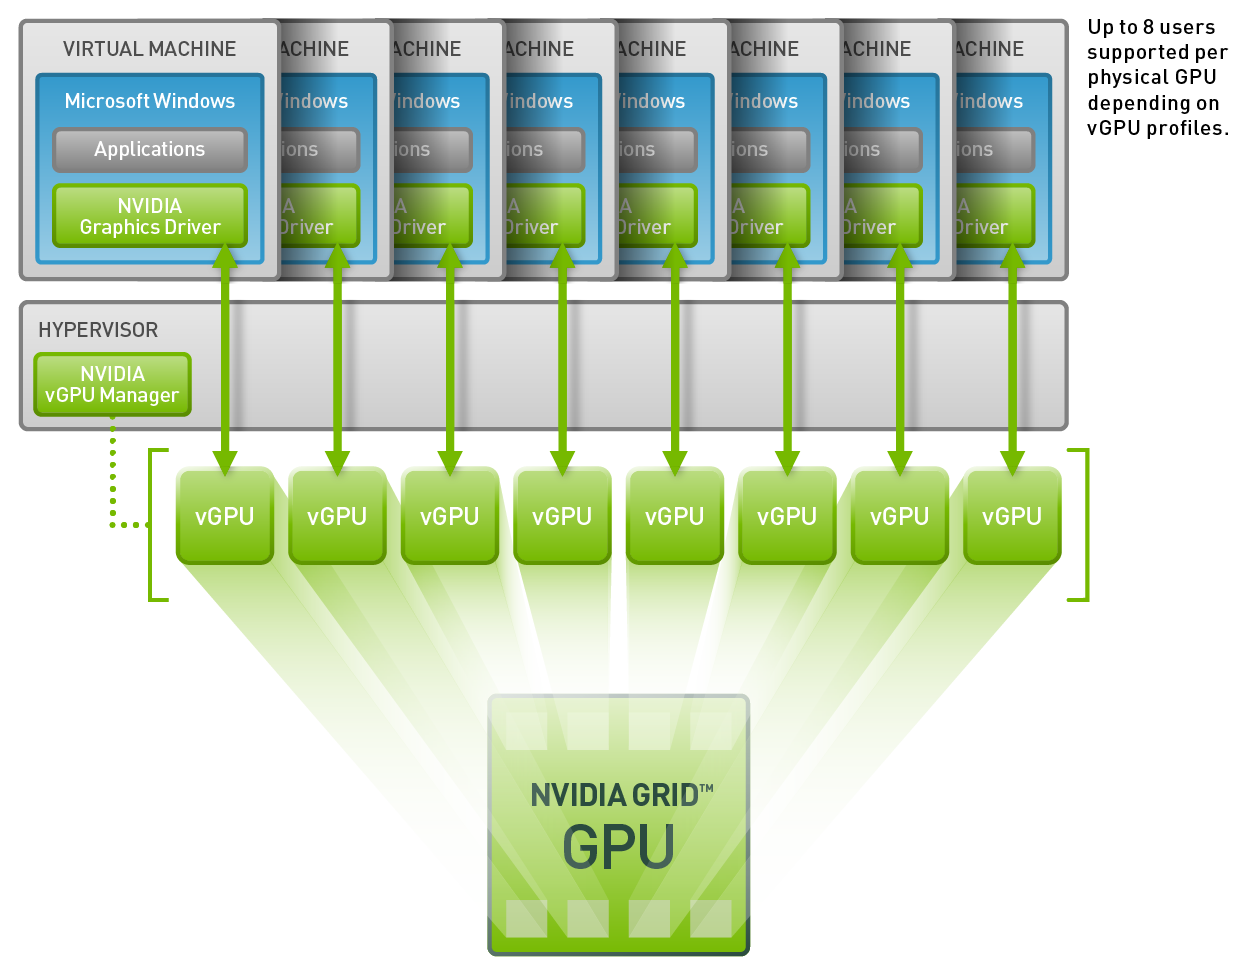 Graphic drive. NVIDIA Grid. NVIDIA виртуальная машина. NVIDIA Grid GPU. Виртуализация процессора.